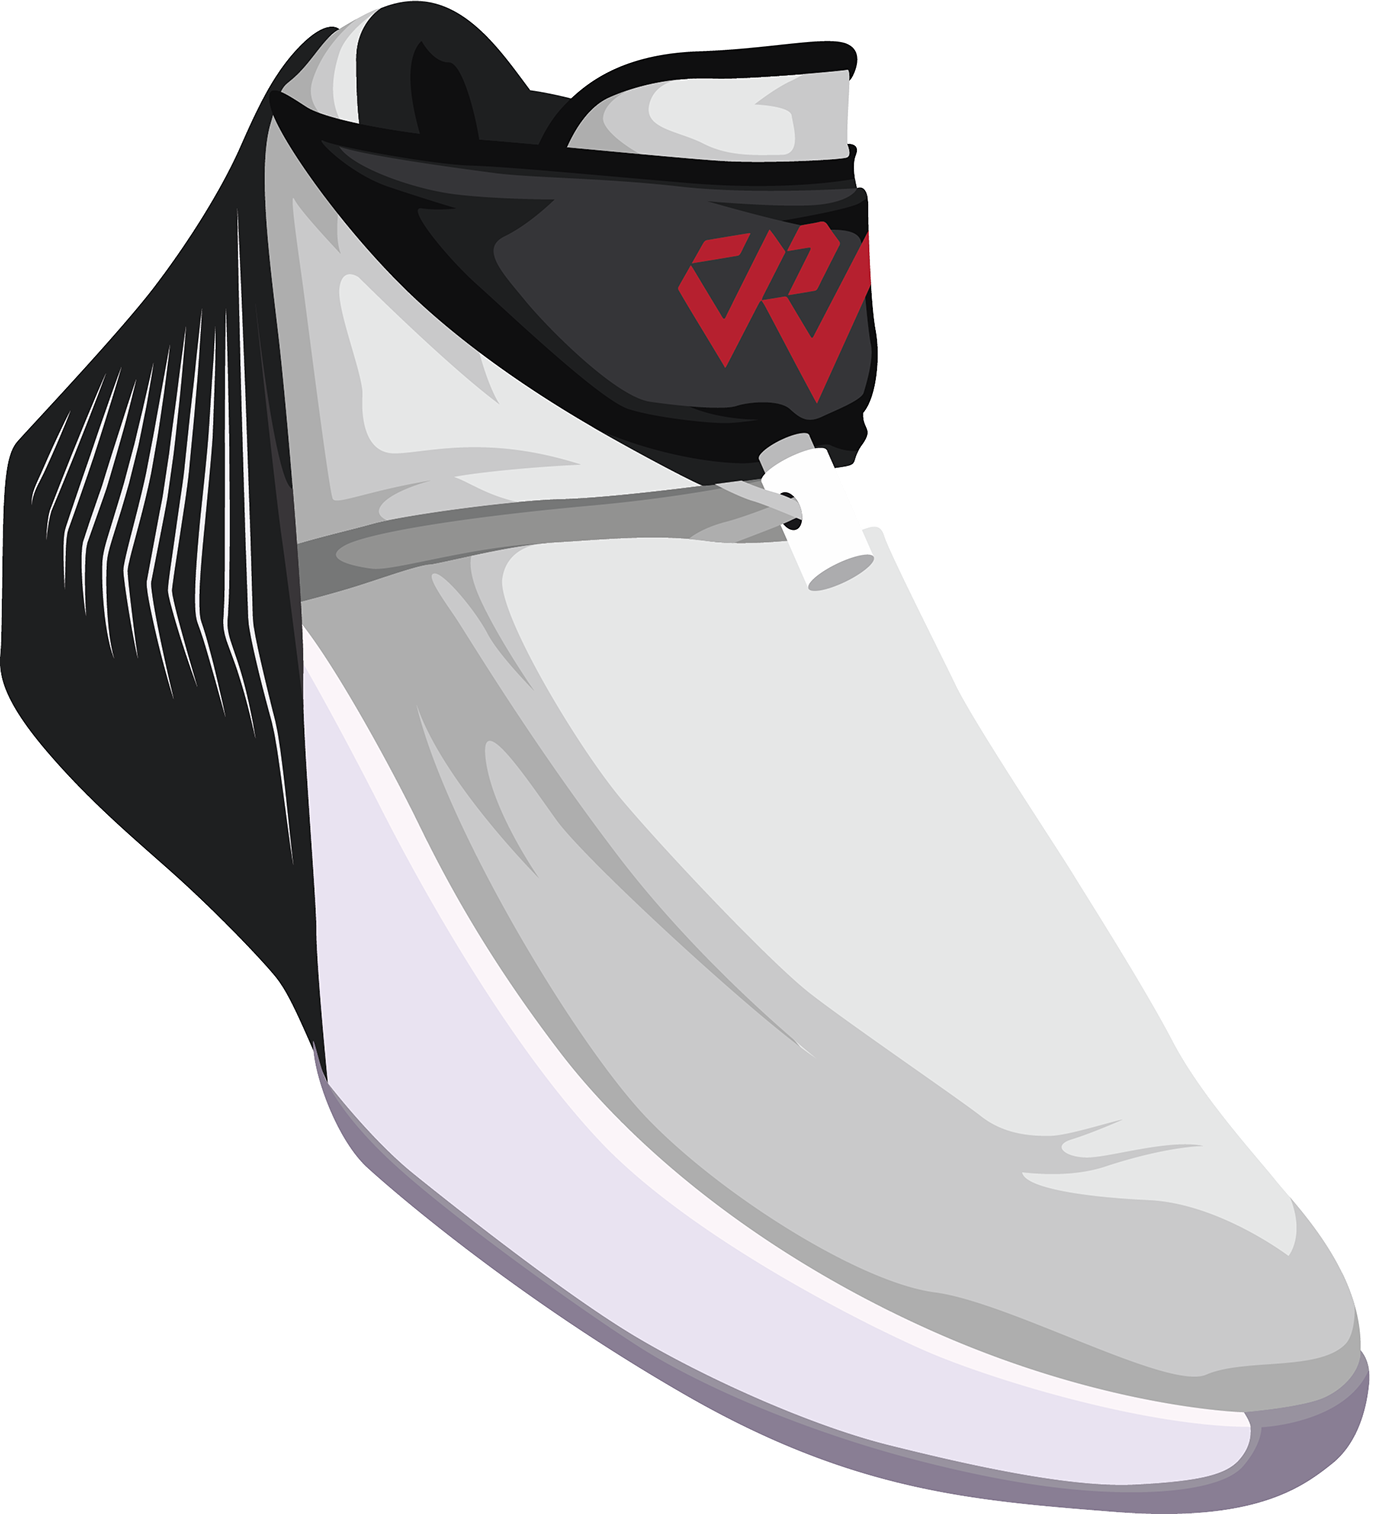 jordan Russell Westbrook shoes sneakers NBA basketball